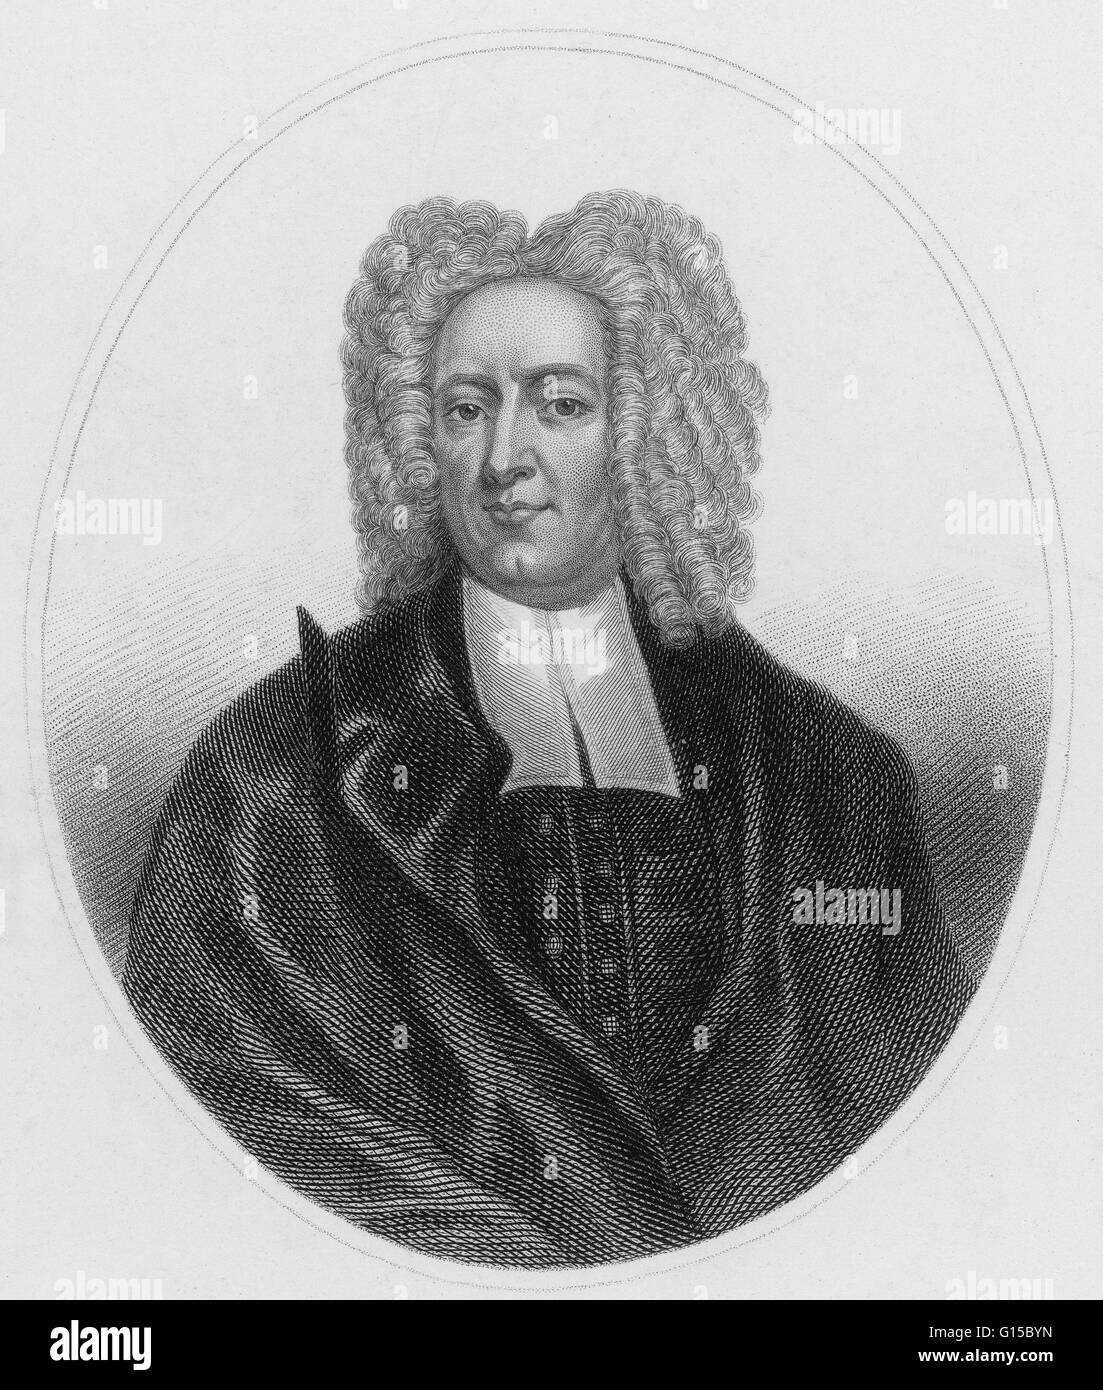 Cotton Mather (Février 12, 1663 - février 13, 1728) était un socialement et politiquement influente ministre puritain de la Nouvelle-Angleterre, auteur prolifique et pamphlétaire. Il a écrit plus de 450 livres et brochures qui font de lui l'un des religieux les plus influents Banque D'Images